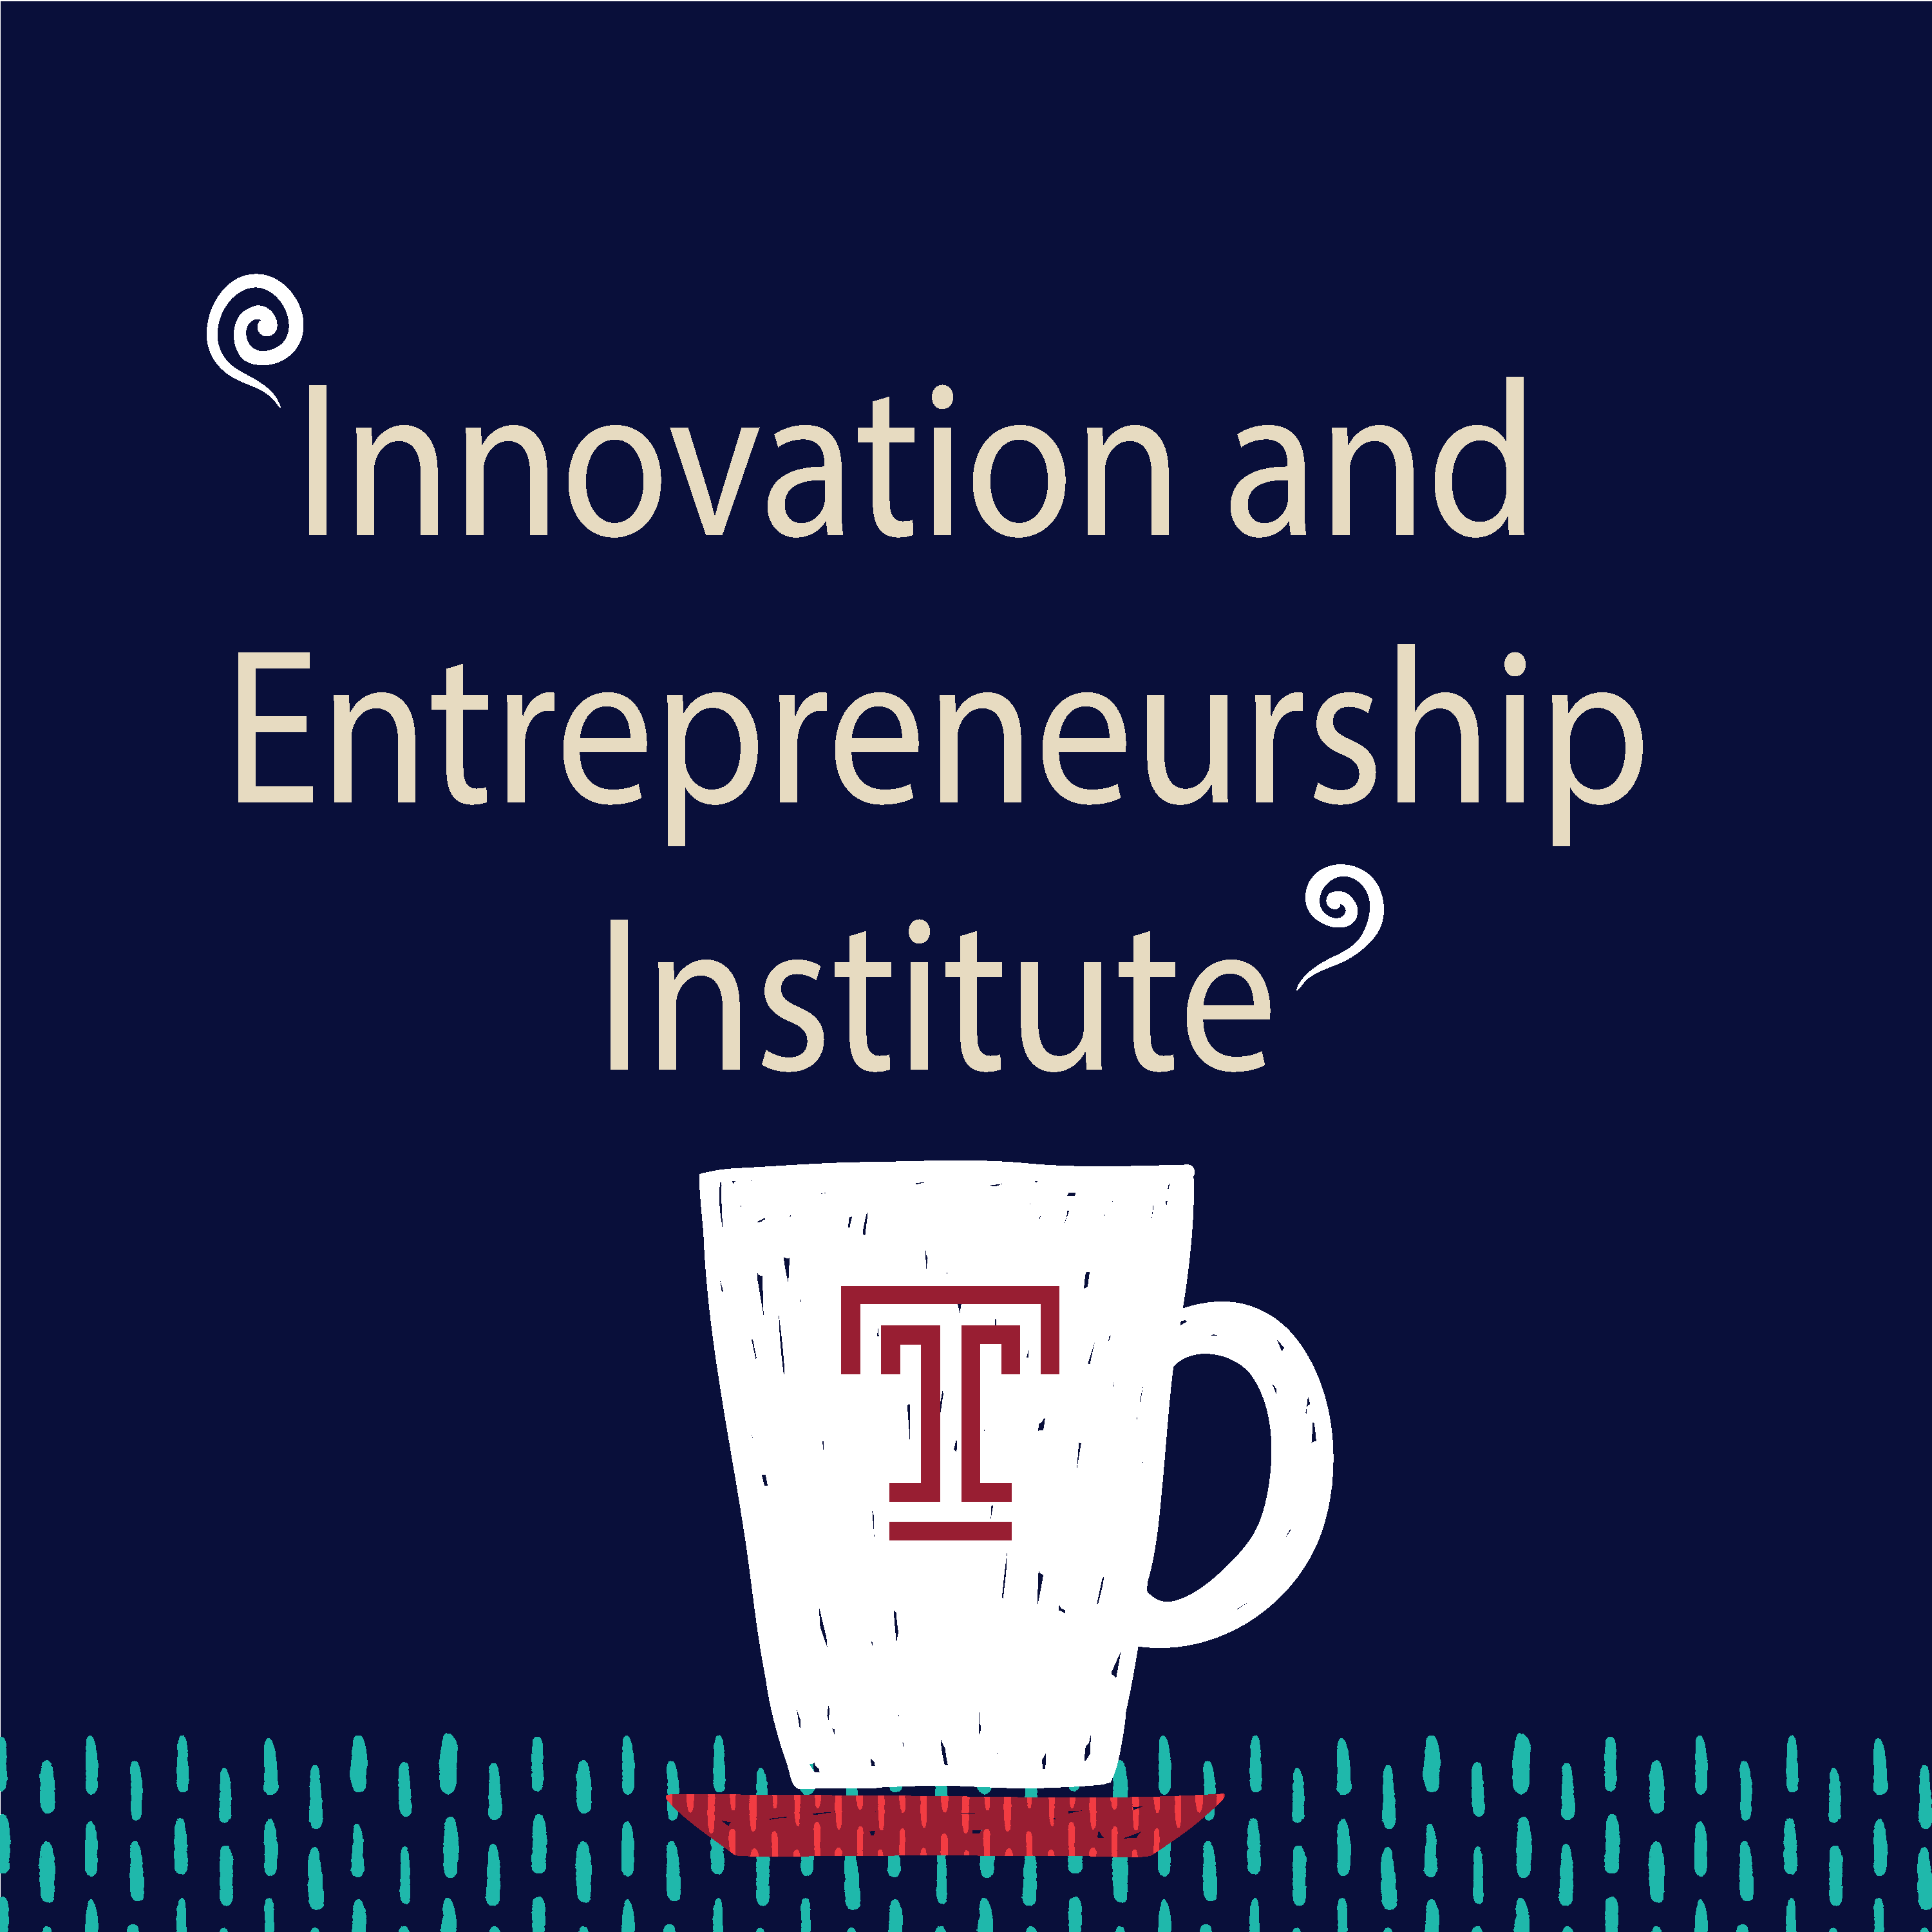 Highlighting the Innovation & Entrepreneurship Institute